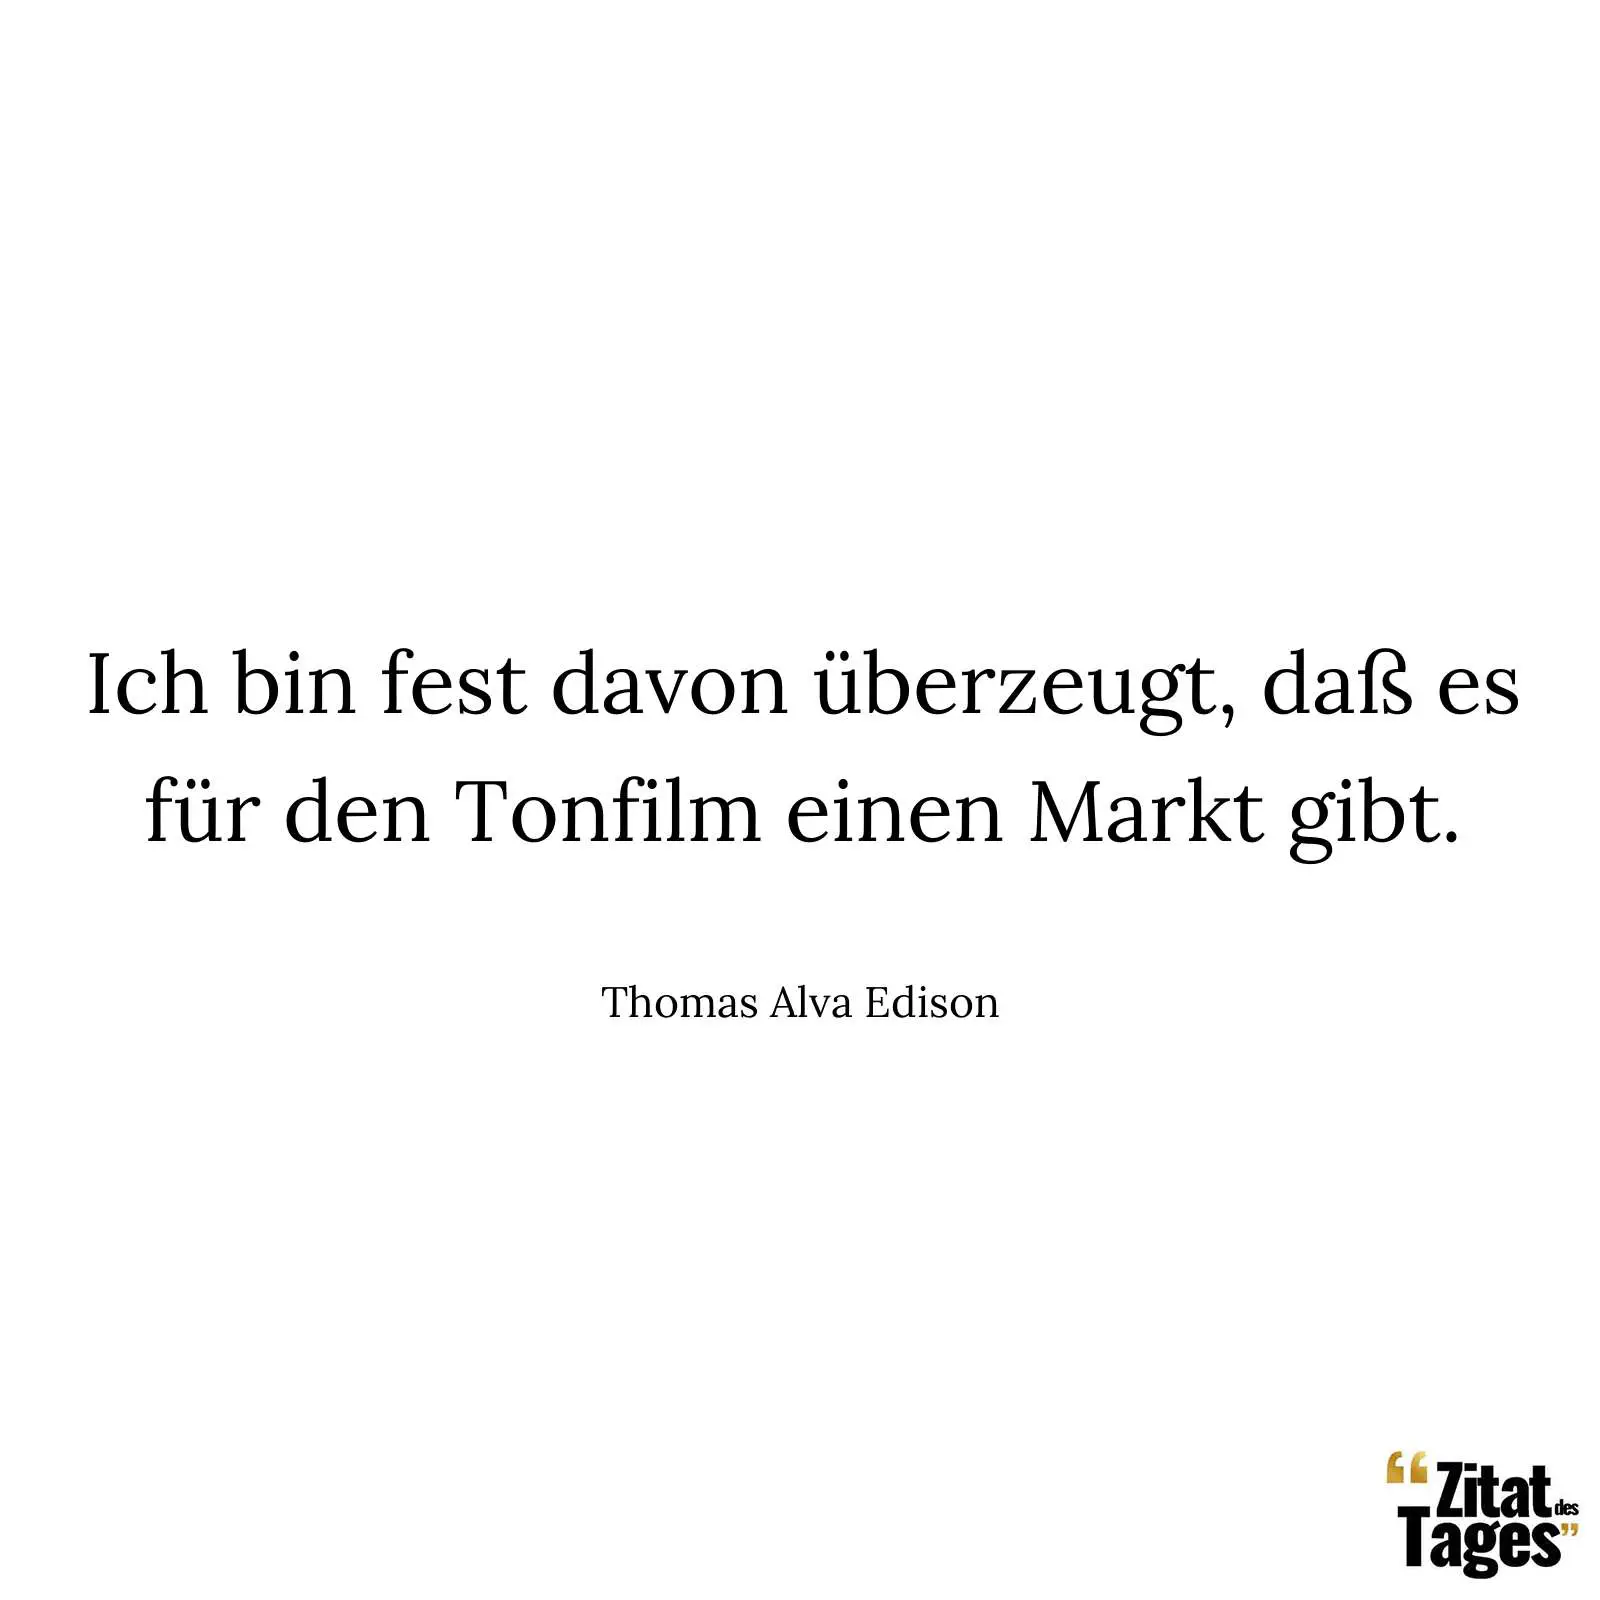 Ich bin fest davon überzeugt, daß es für den Tonfilm einen Markt gibt. - Thomas Alva Edison